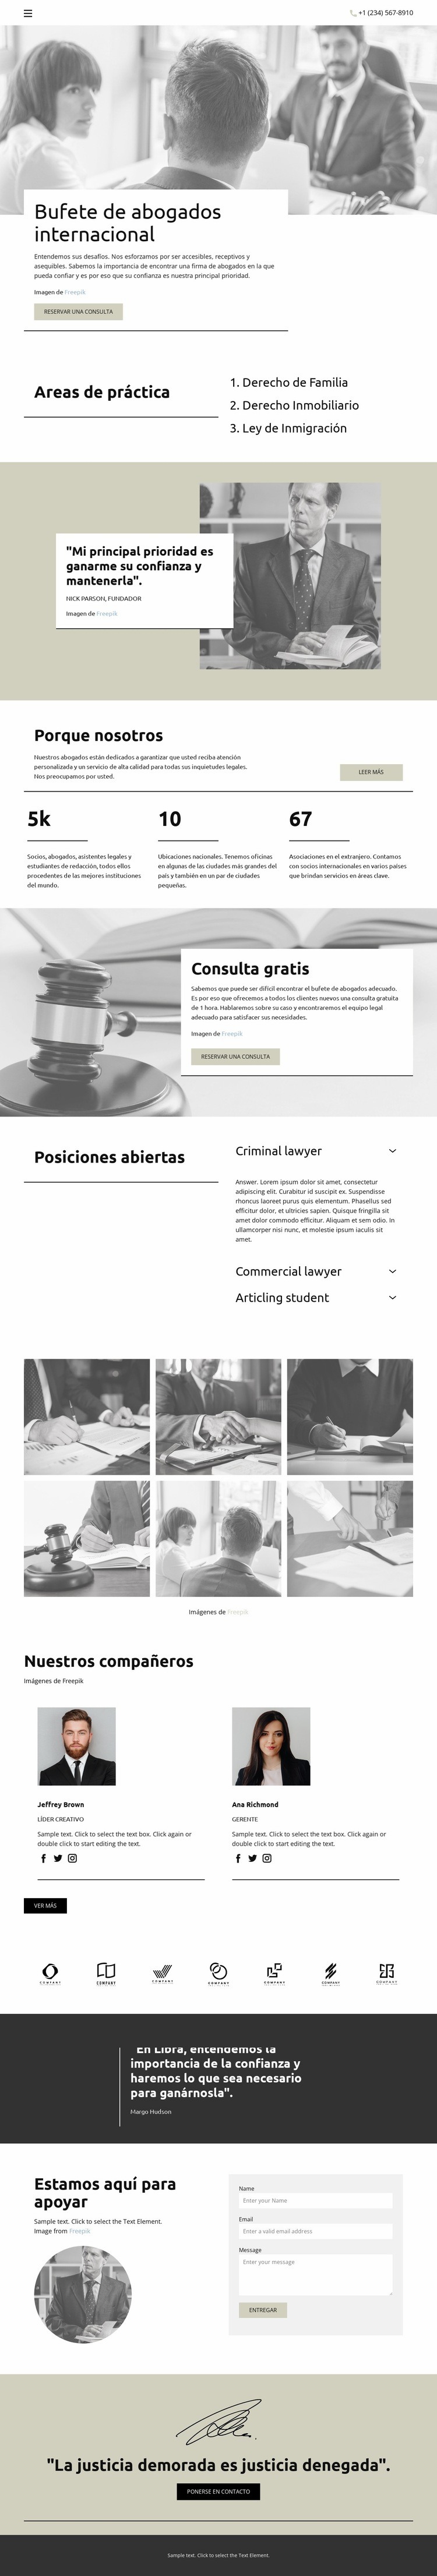 Bufete de abogados internacional Plantilla